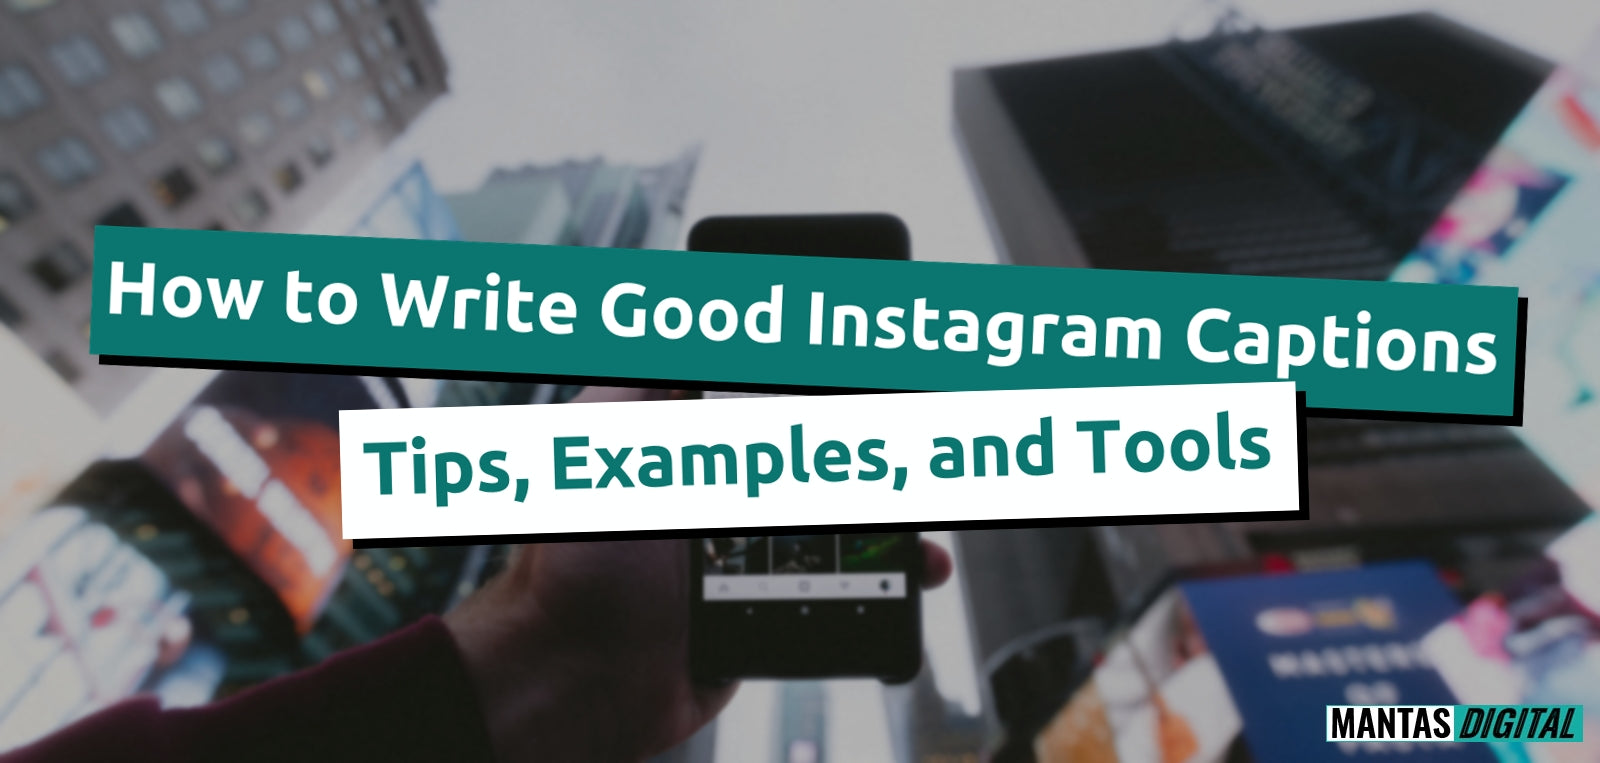 Mantas-Digital-How-To-Write-Good-Instagram-Captions